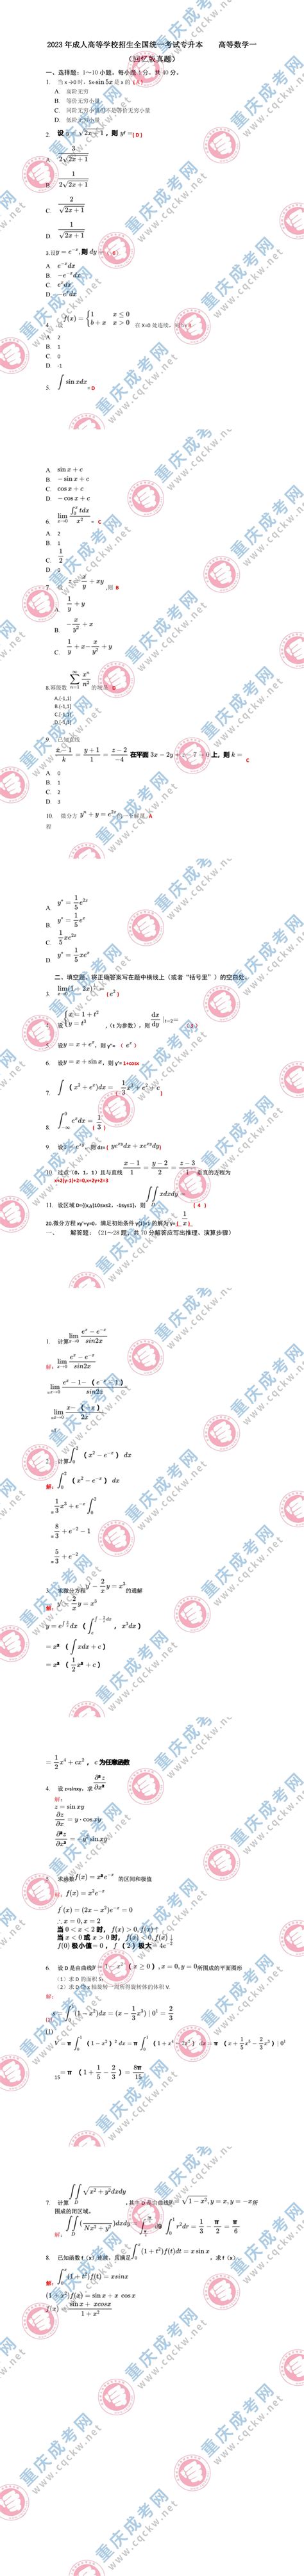 2023年重庆成人高考专升本《高等数学(一)》真题及答案解析(考生回忆版)_重庆成考网